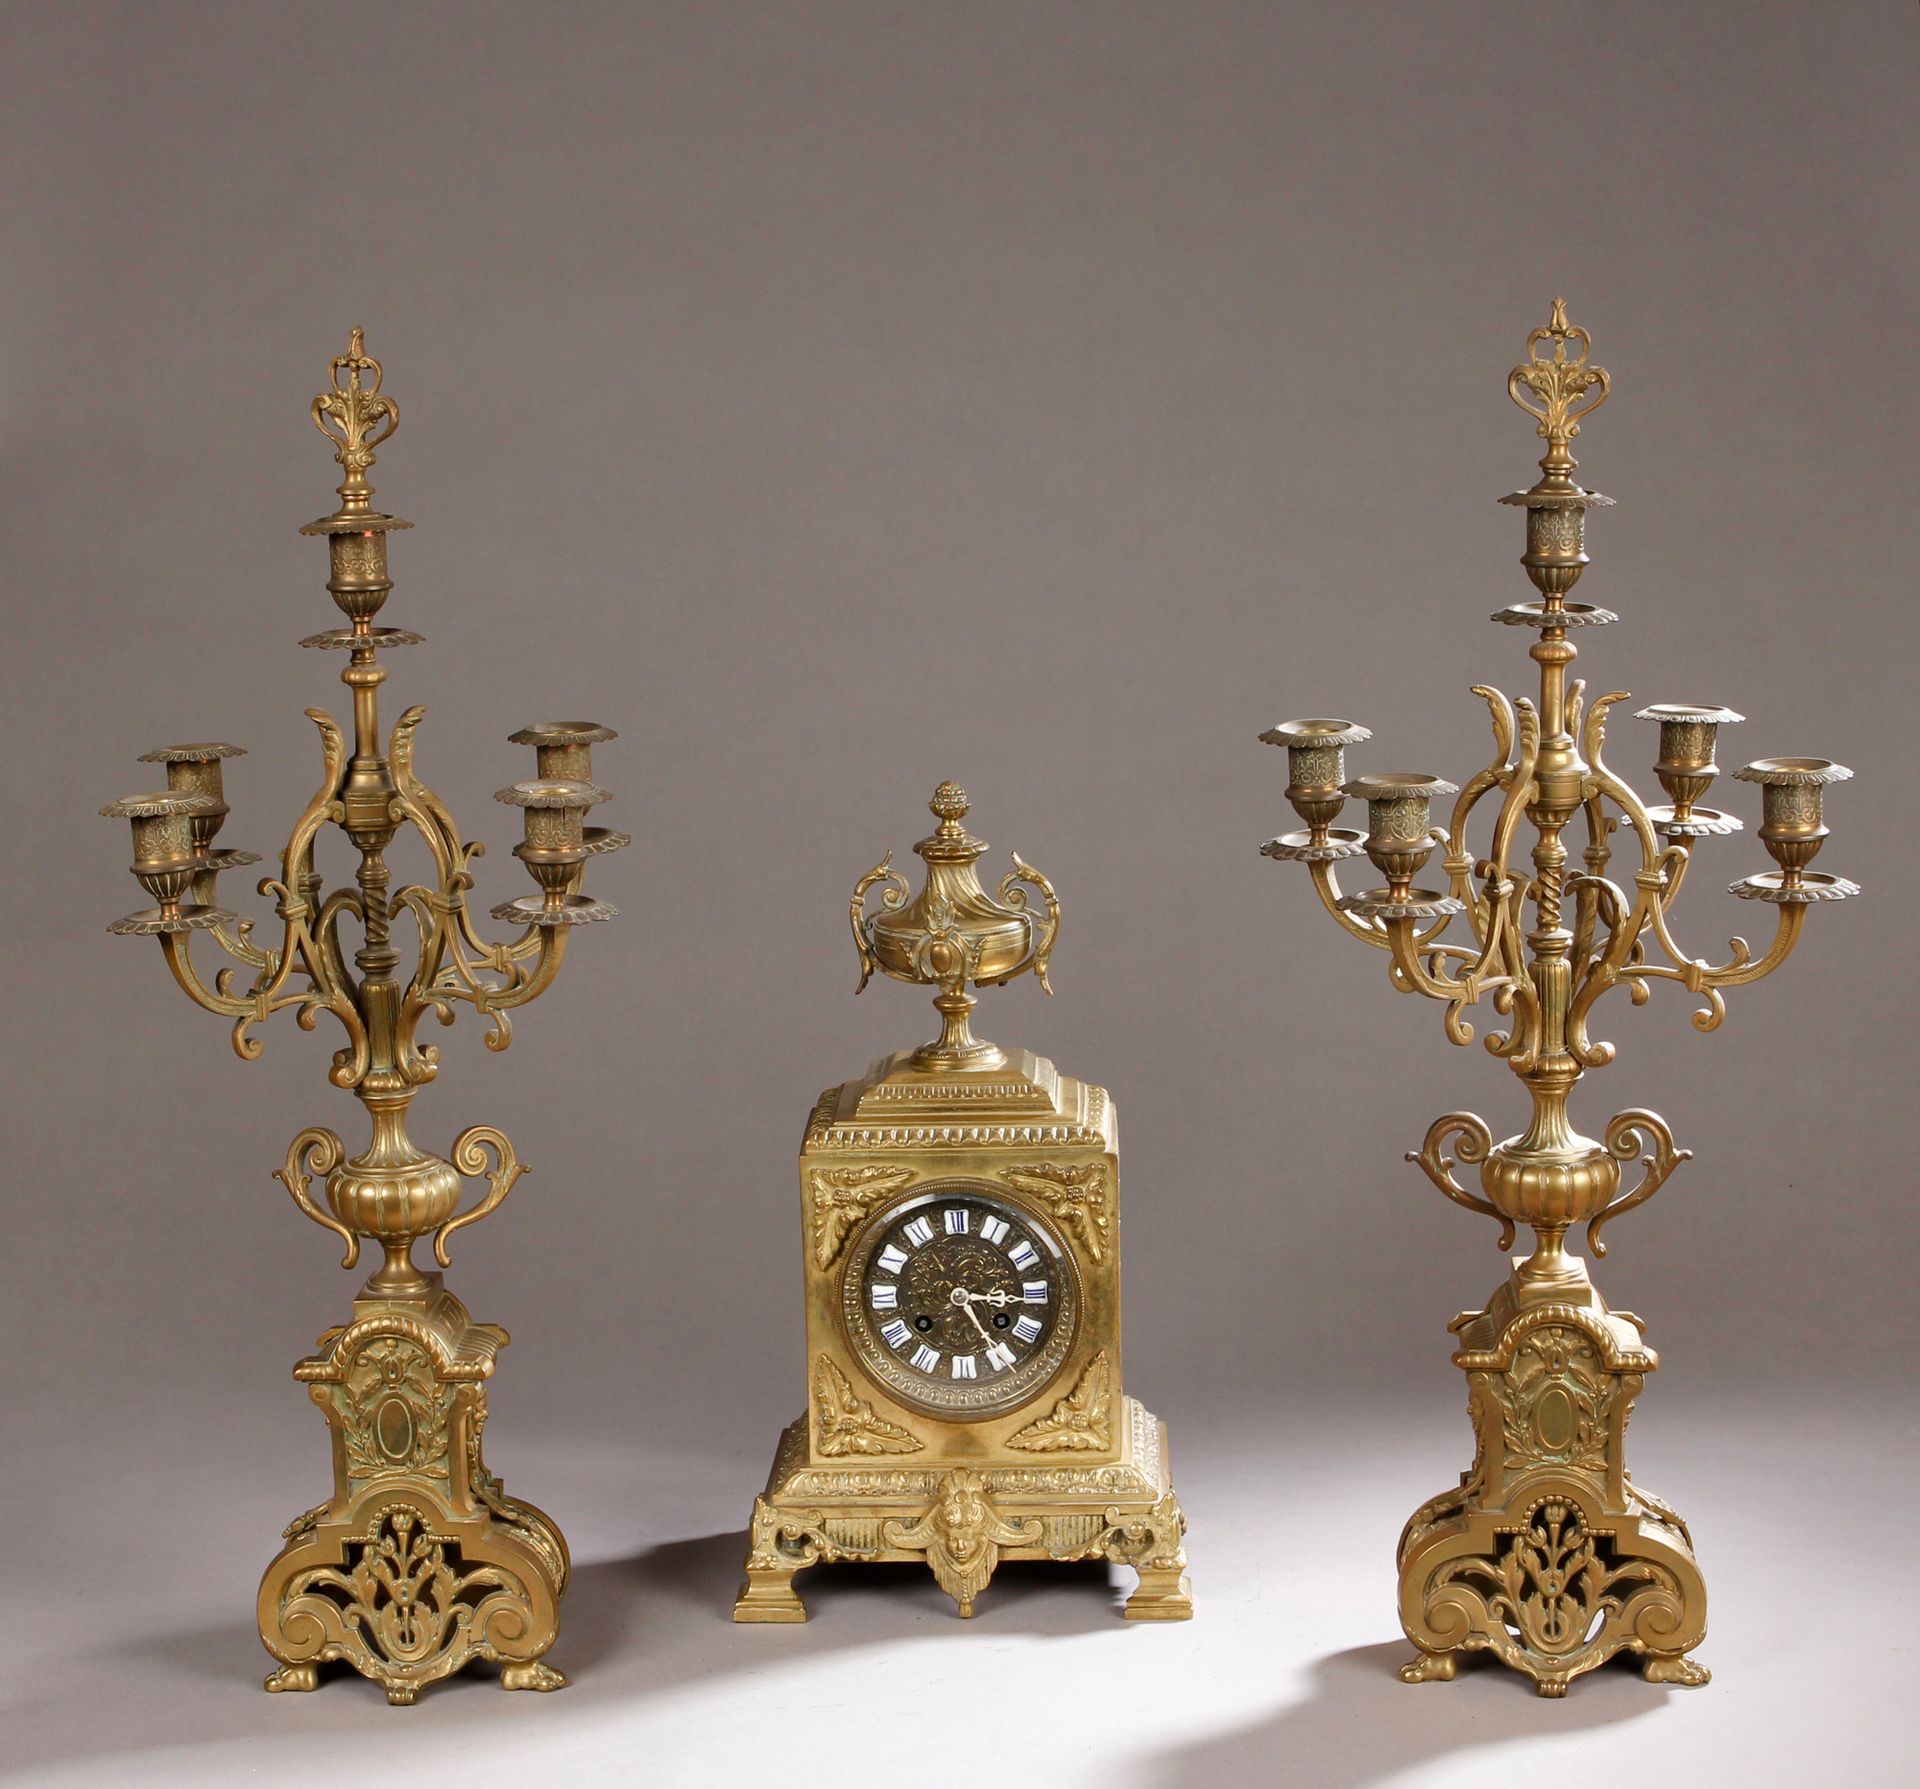 Null Repisa de bronce con volutas y follaje, compuesta por :

Reloj. H : 39 cm

&hellip;